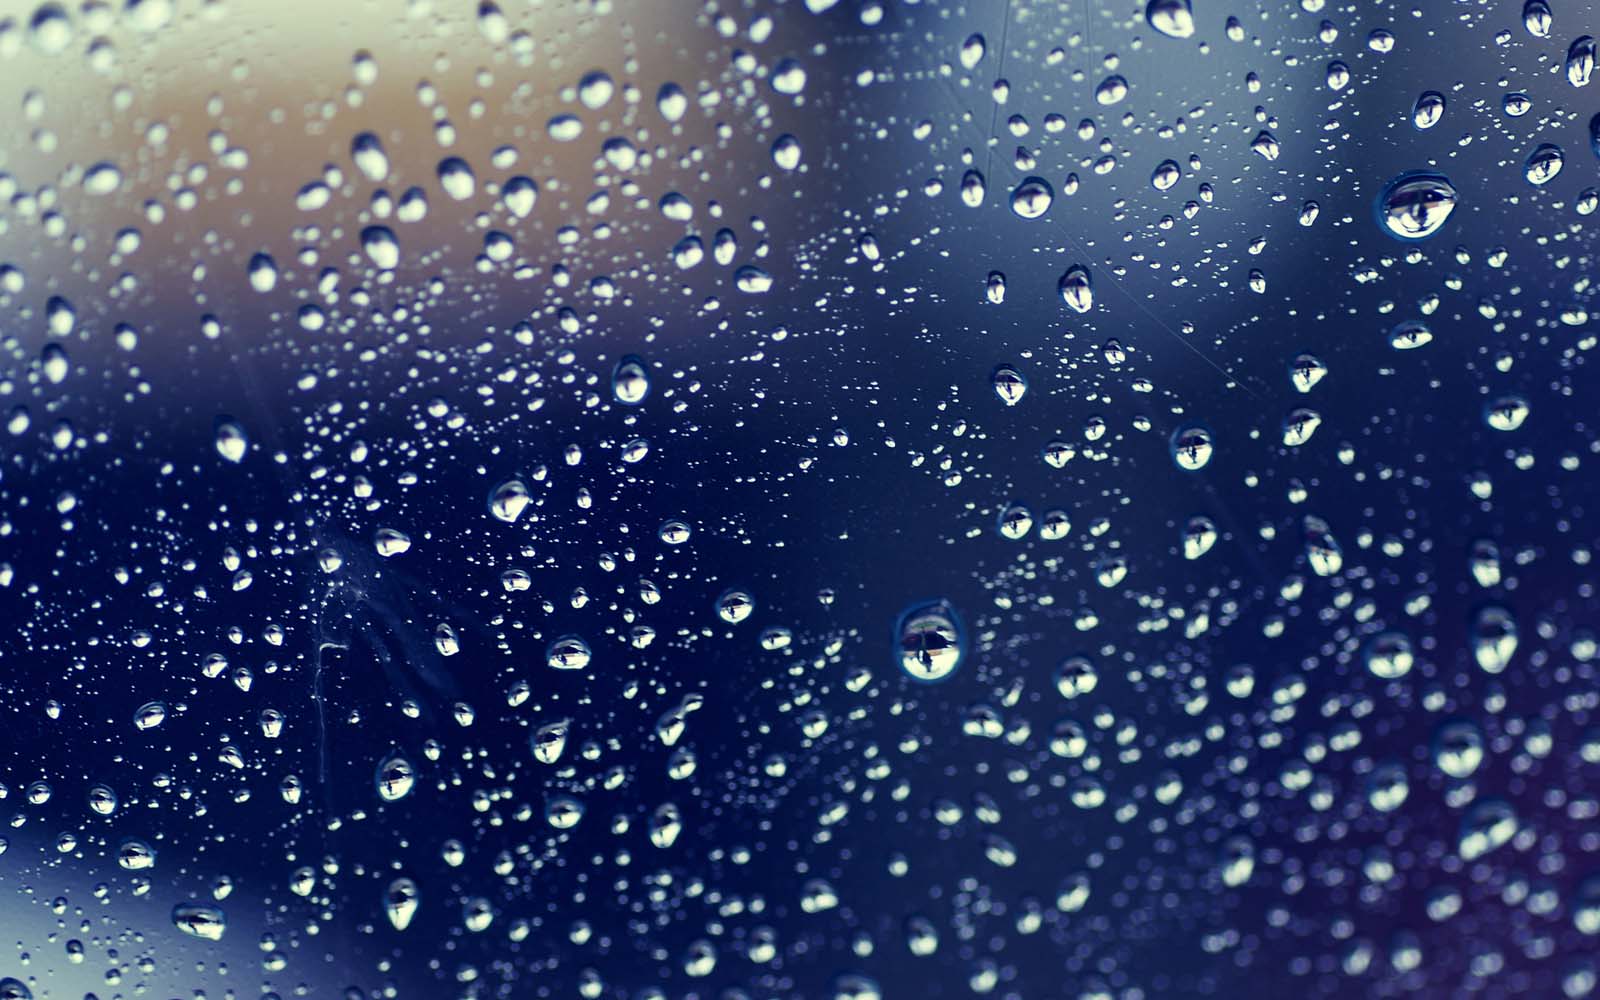 10 Beautiful Rain Drop HD Wallpapers – Daily Backgrounds in HD